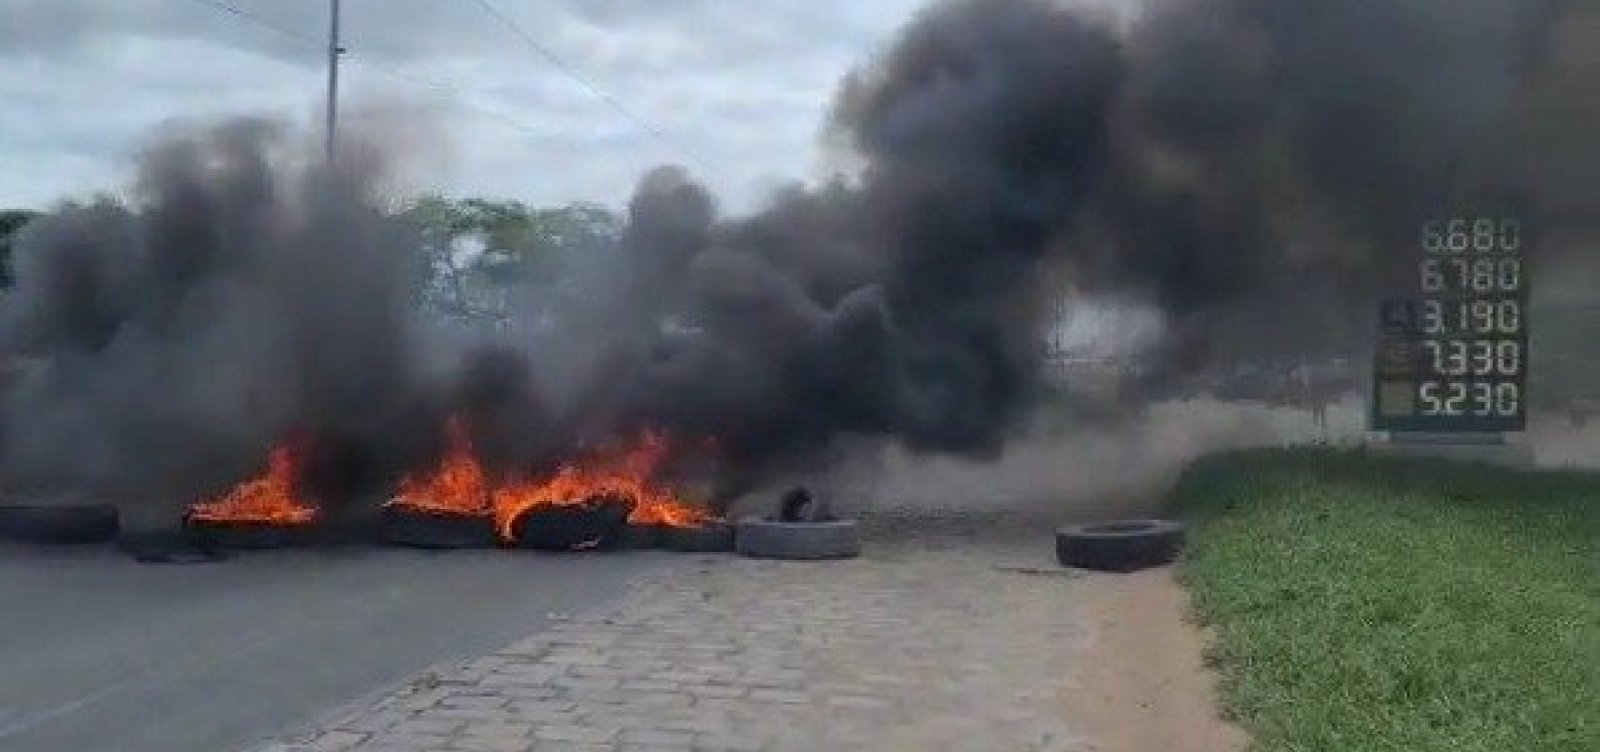  Caminhoneiros fecham anel rodoviário de Feira de Santana em protesto contra o preço dos combustíveis